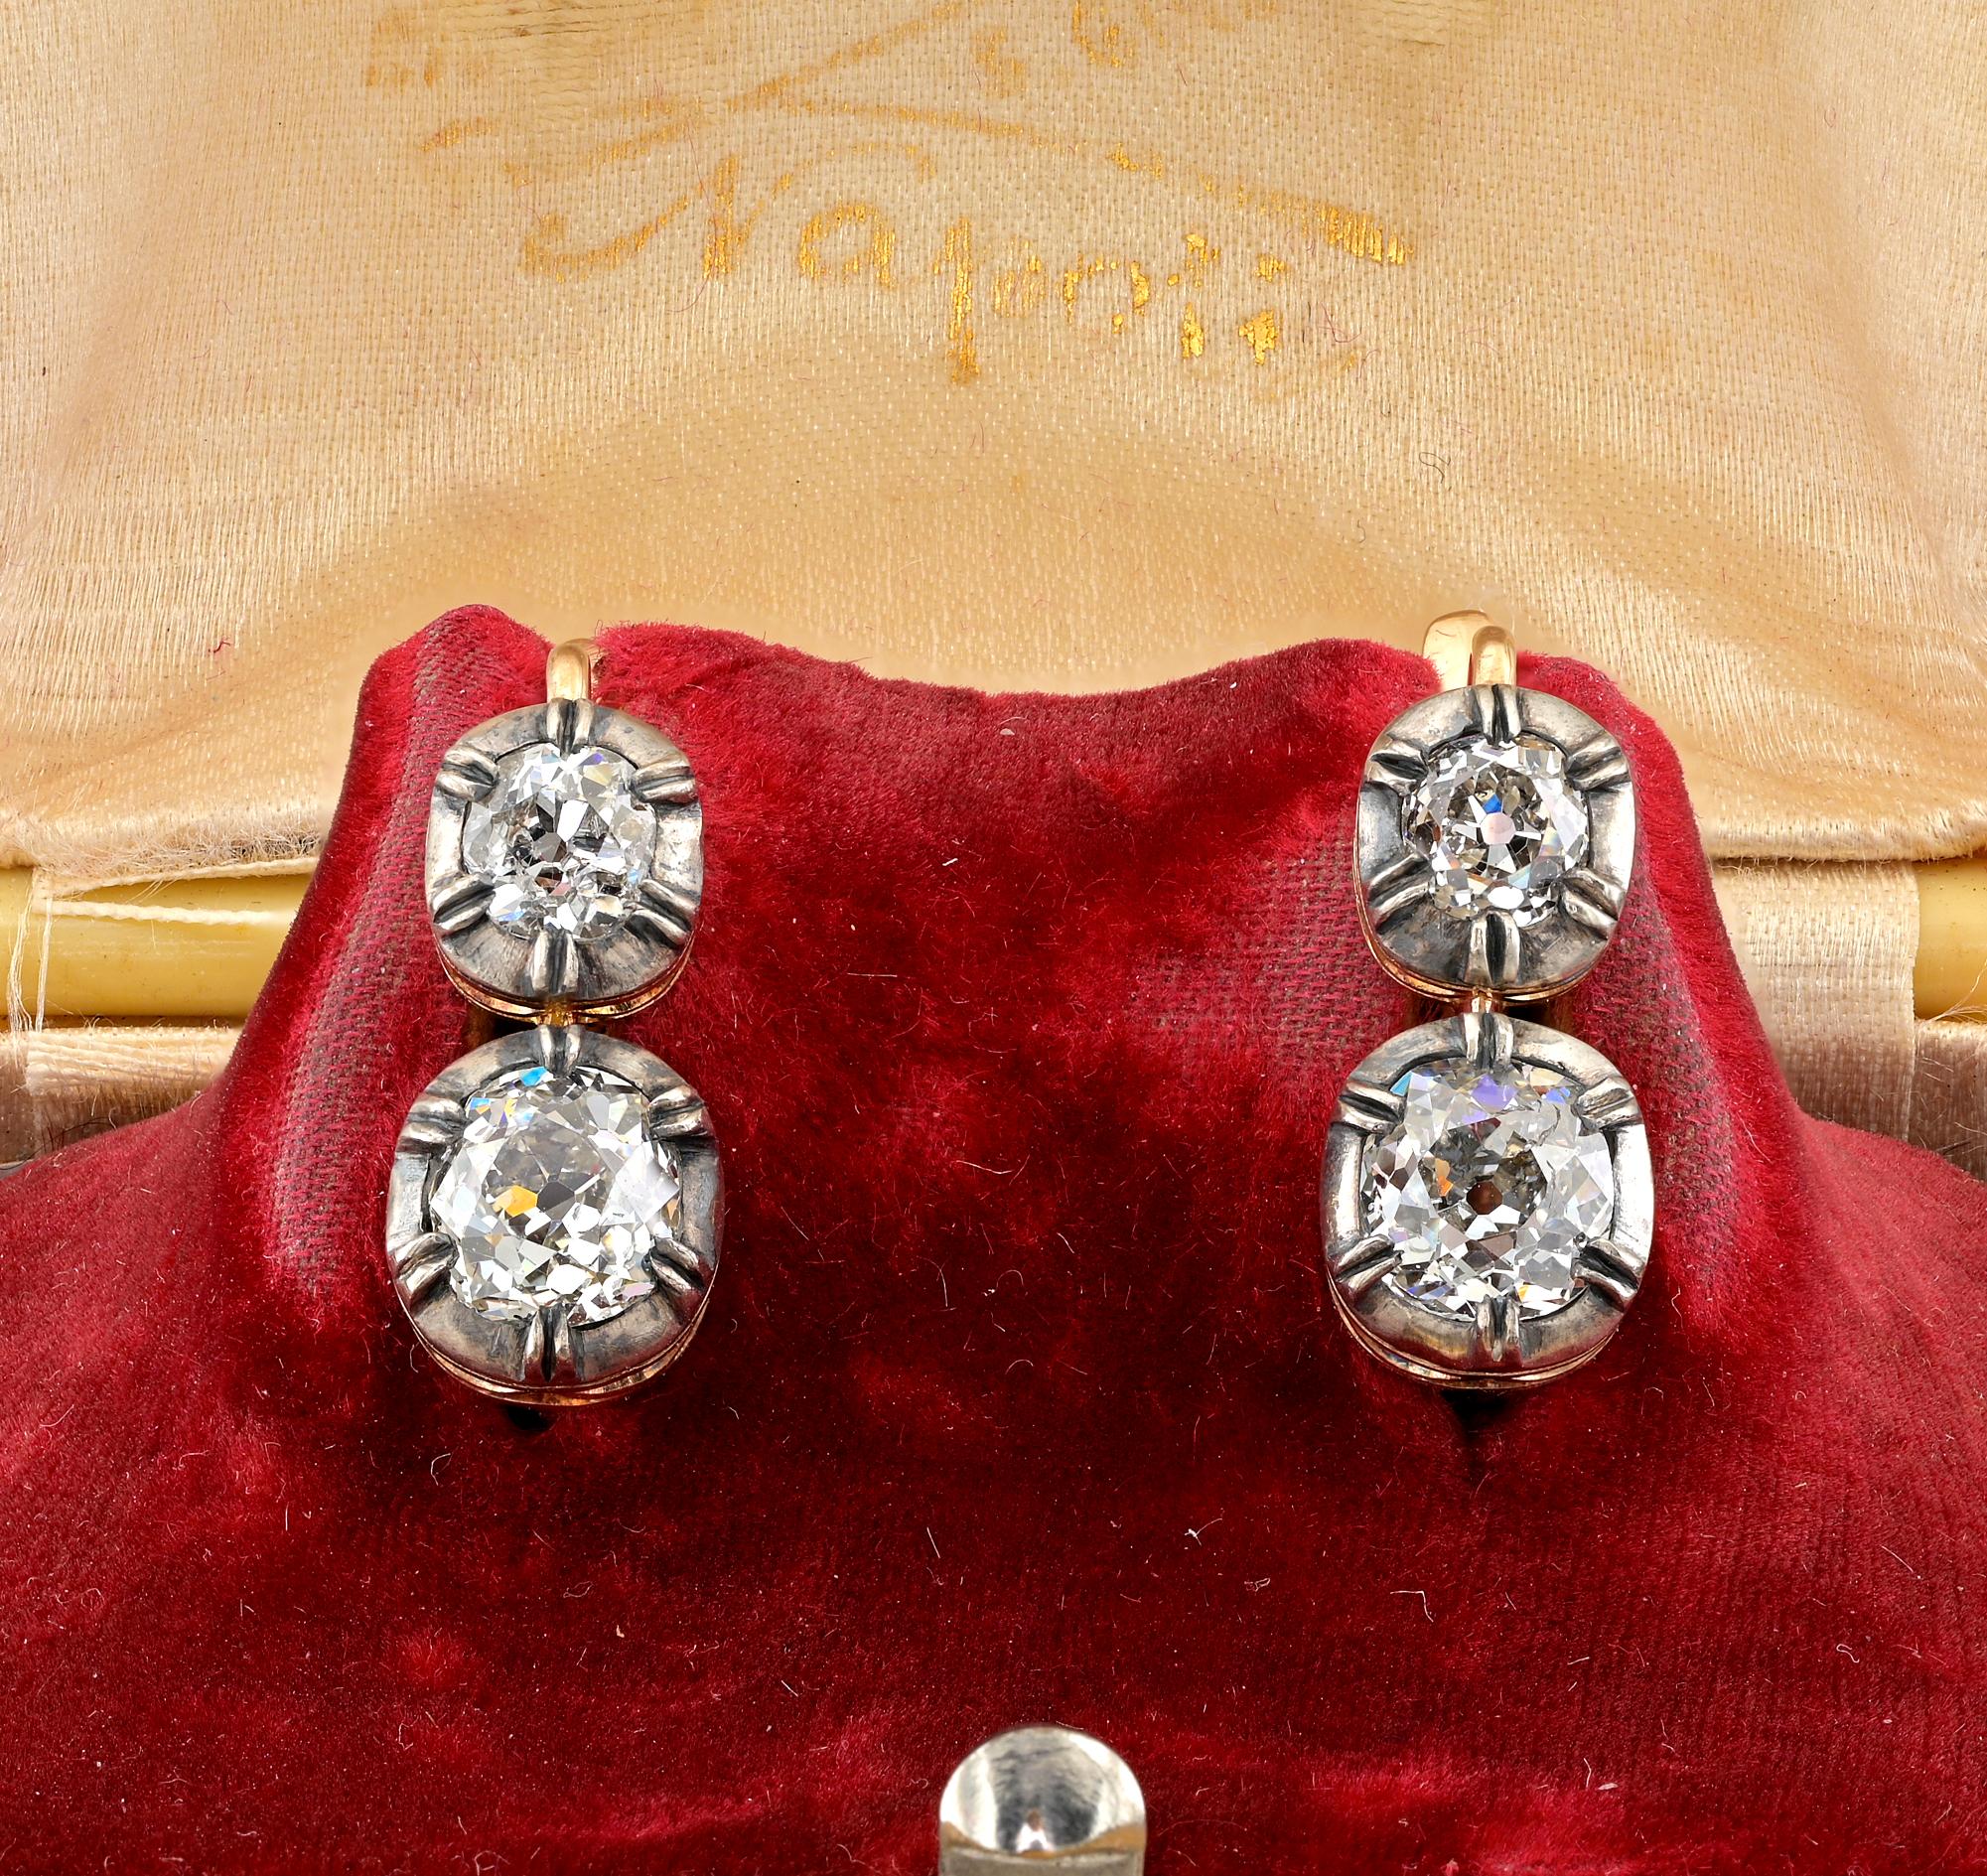 Superb Paar gute Größe Diamond Drop Ohrringe hervorragend handgefertigt aus massivem 18 Kt Gold gekrönt von Silber
Elegantes Design im viktorianischen Stil mit einer wunderschönen durchbrochenen und abgedunkelten Silberkuchen-Fassung, die einer